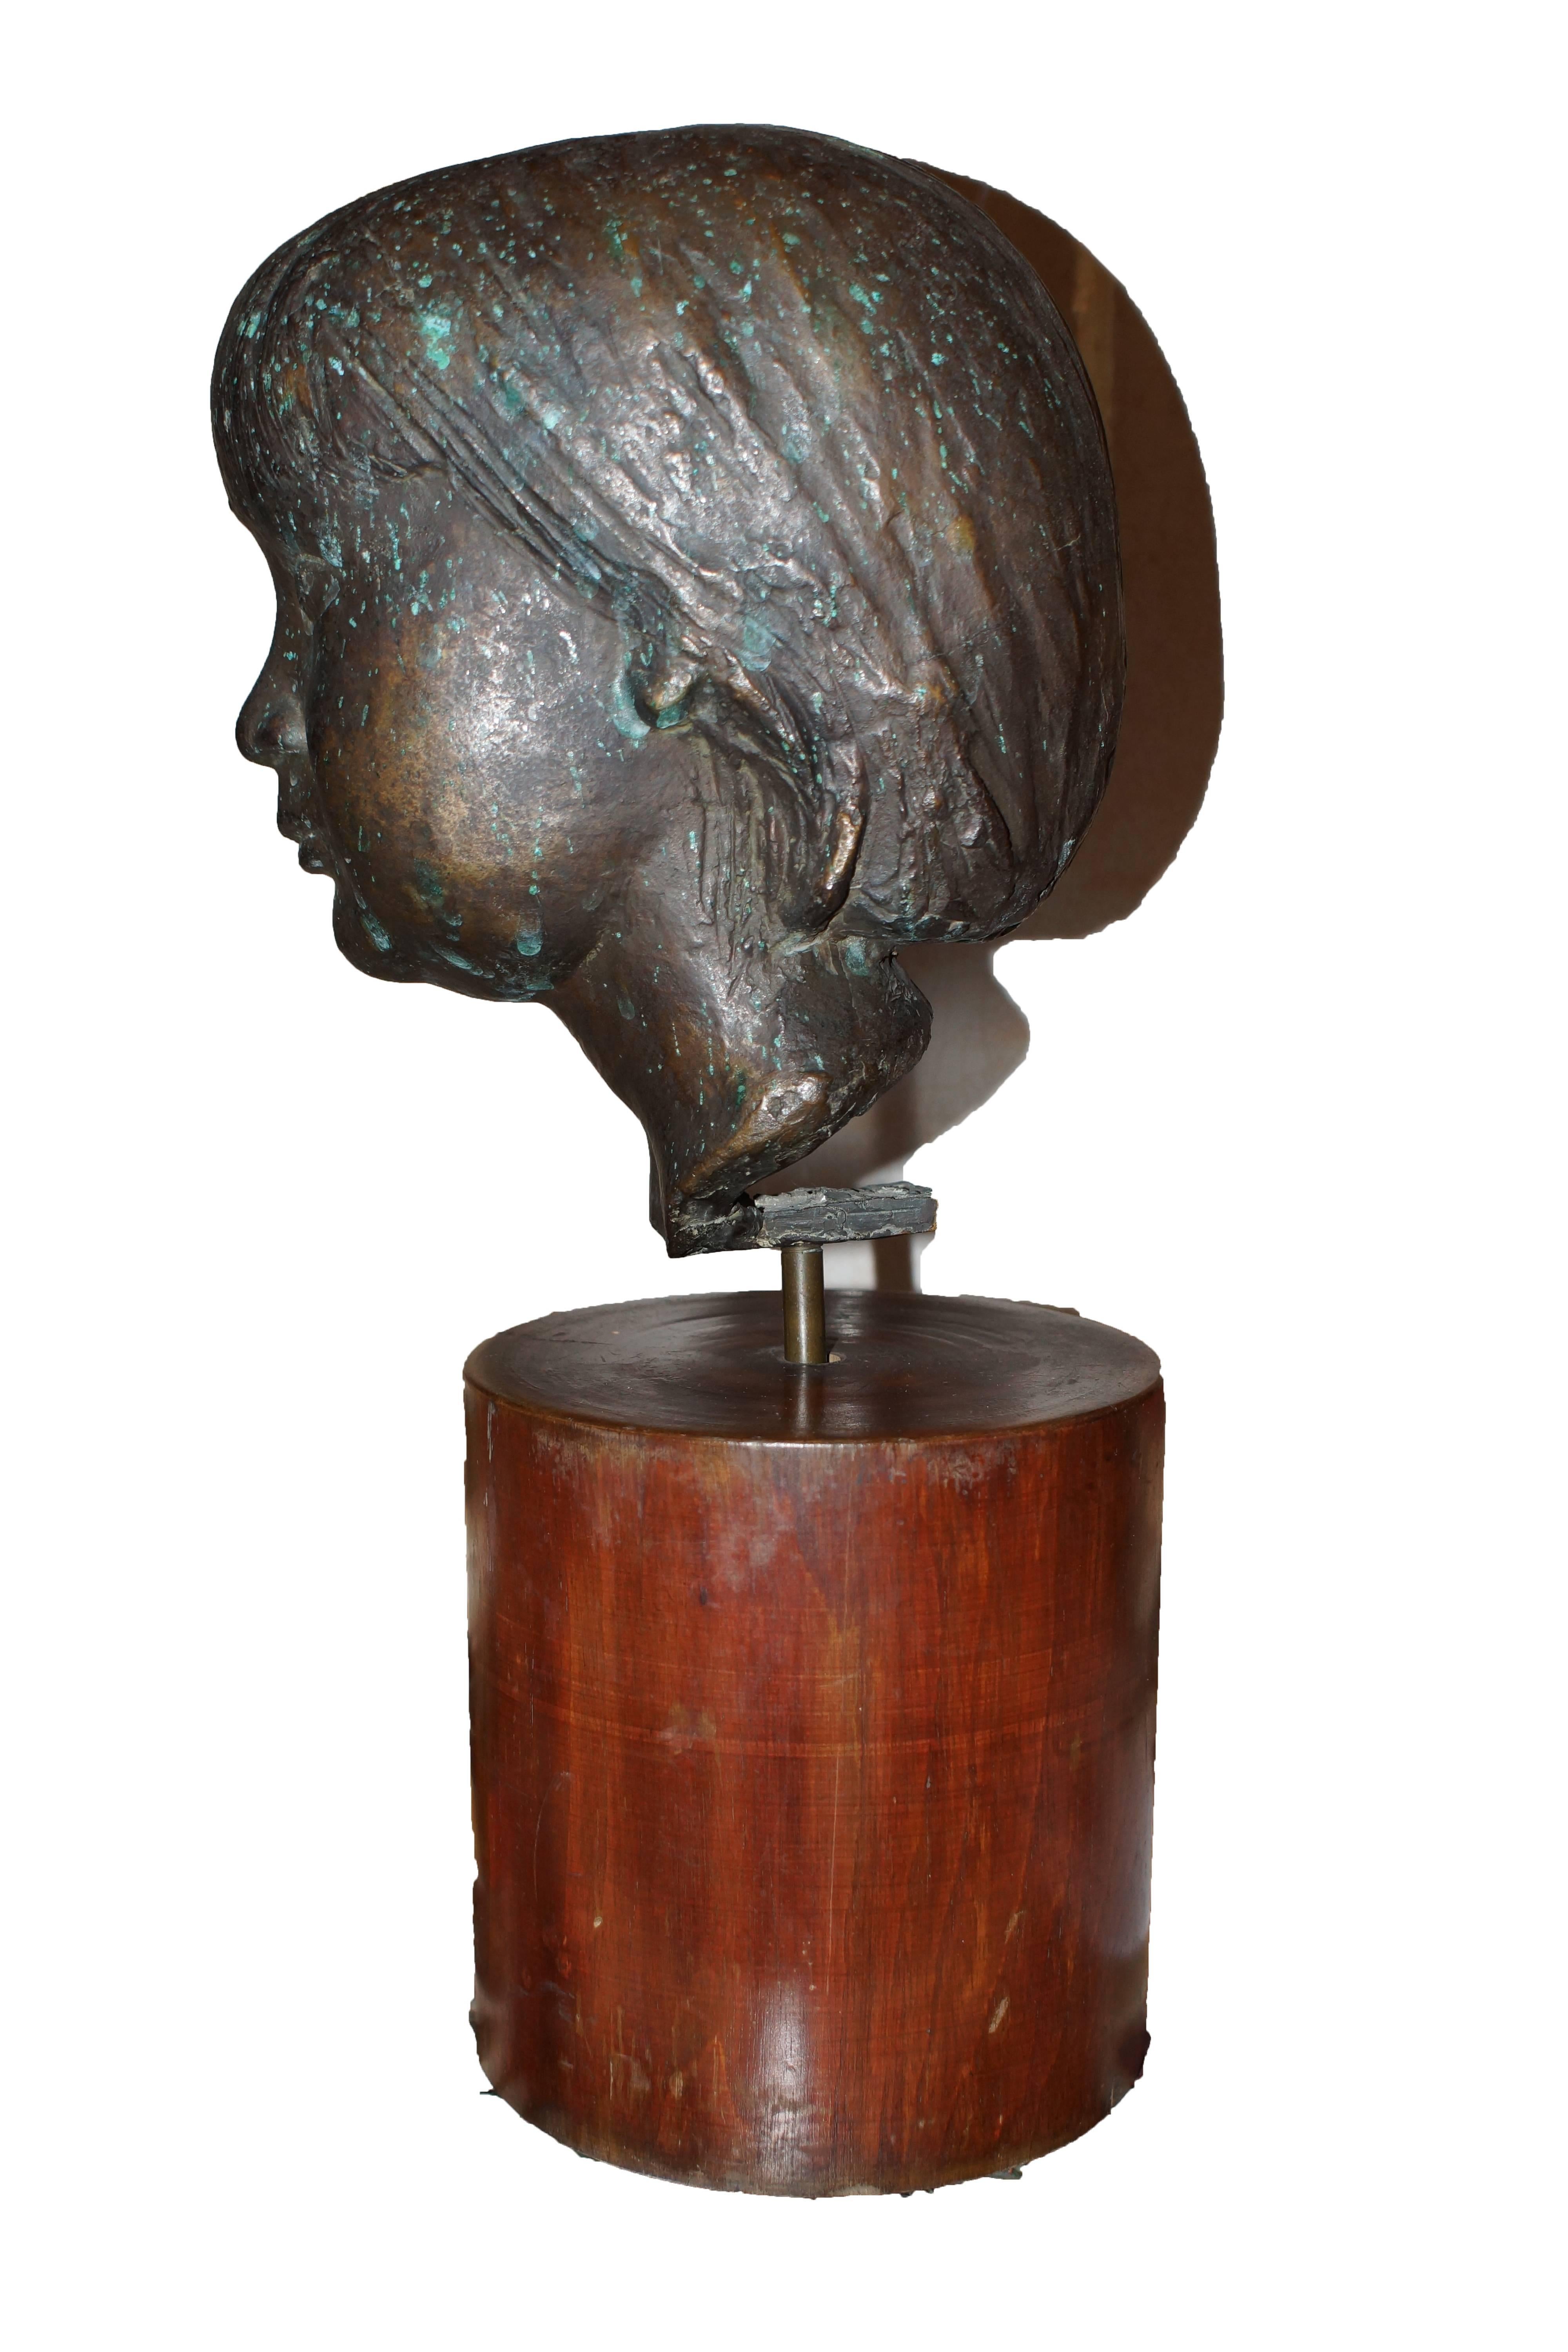 Cette tête de jeune garçon est une sculpture rare, précieuse et inédite de Marino Marini, appartenant à une collection privée depuis plus de 60 ans.

Le même sujet sur la pierre est repris dans l'édition Electa 1972 ， 